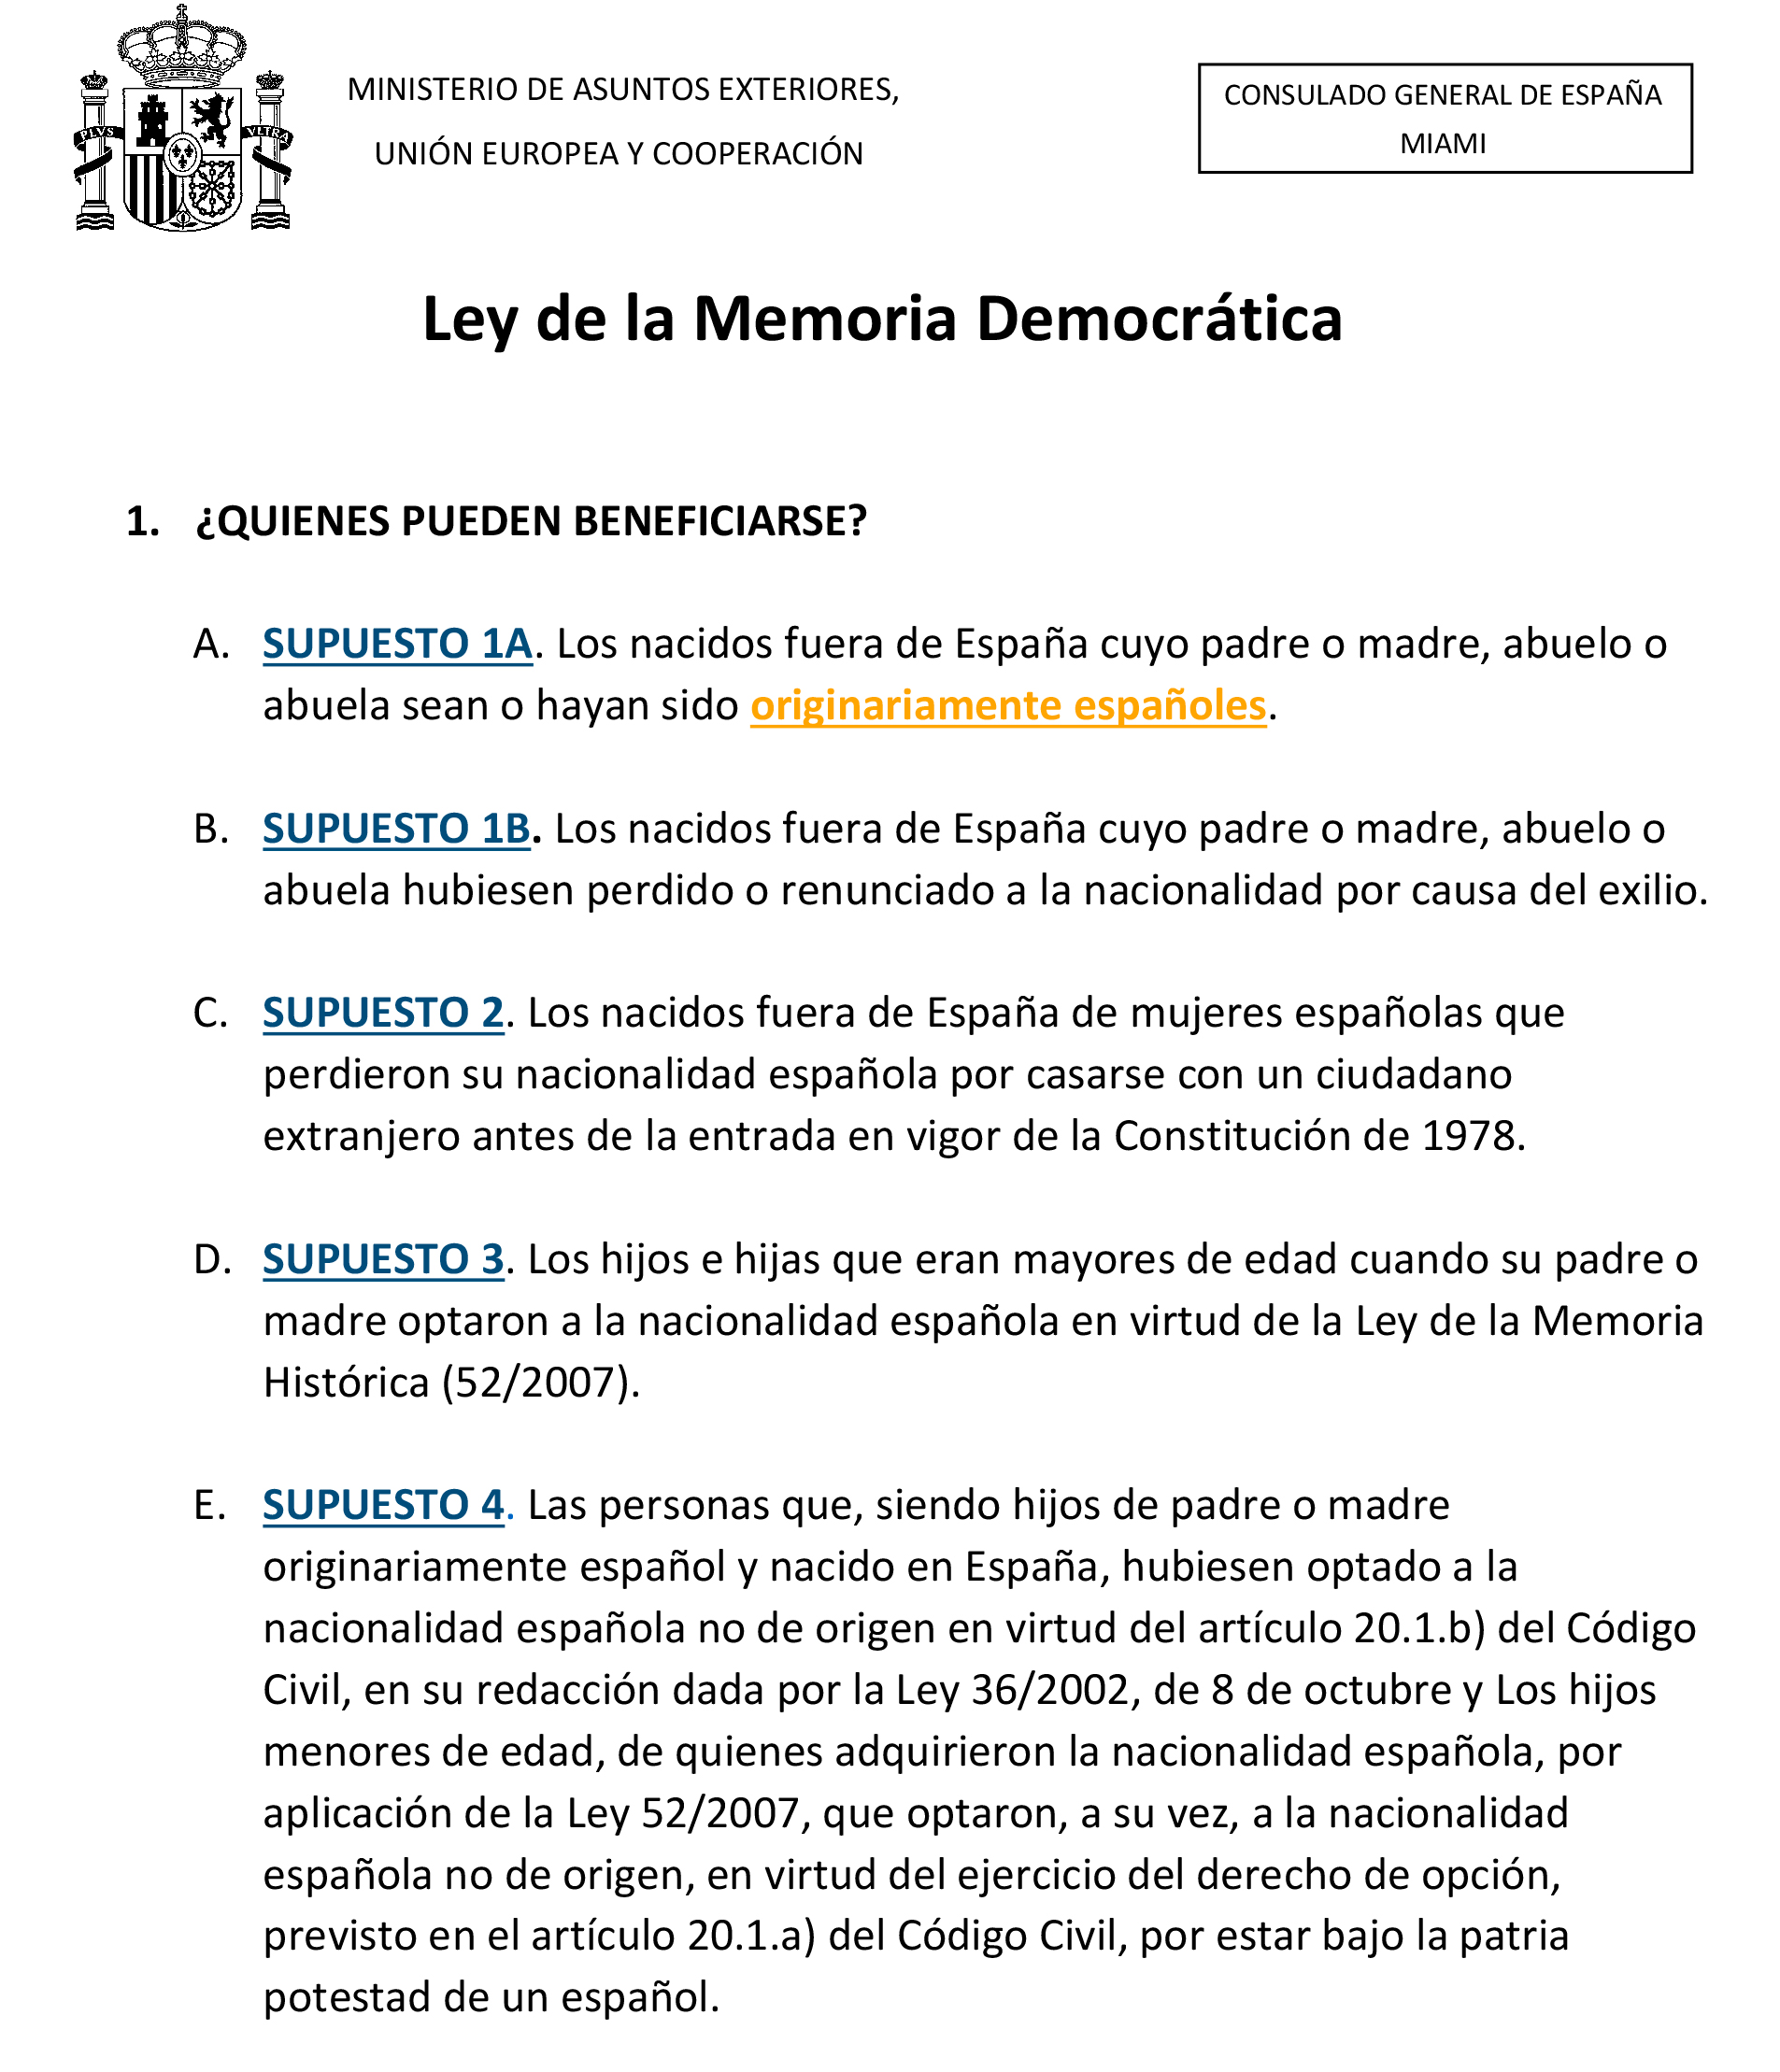 Ley-de-la-Memoria-Democrática-Información-requisitos-y-procedimientos-2